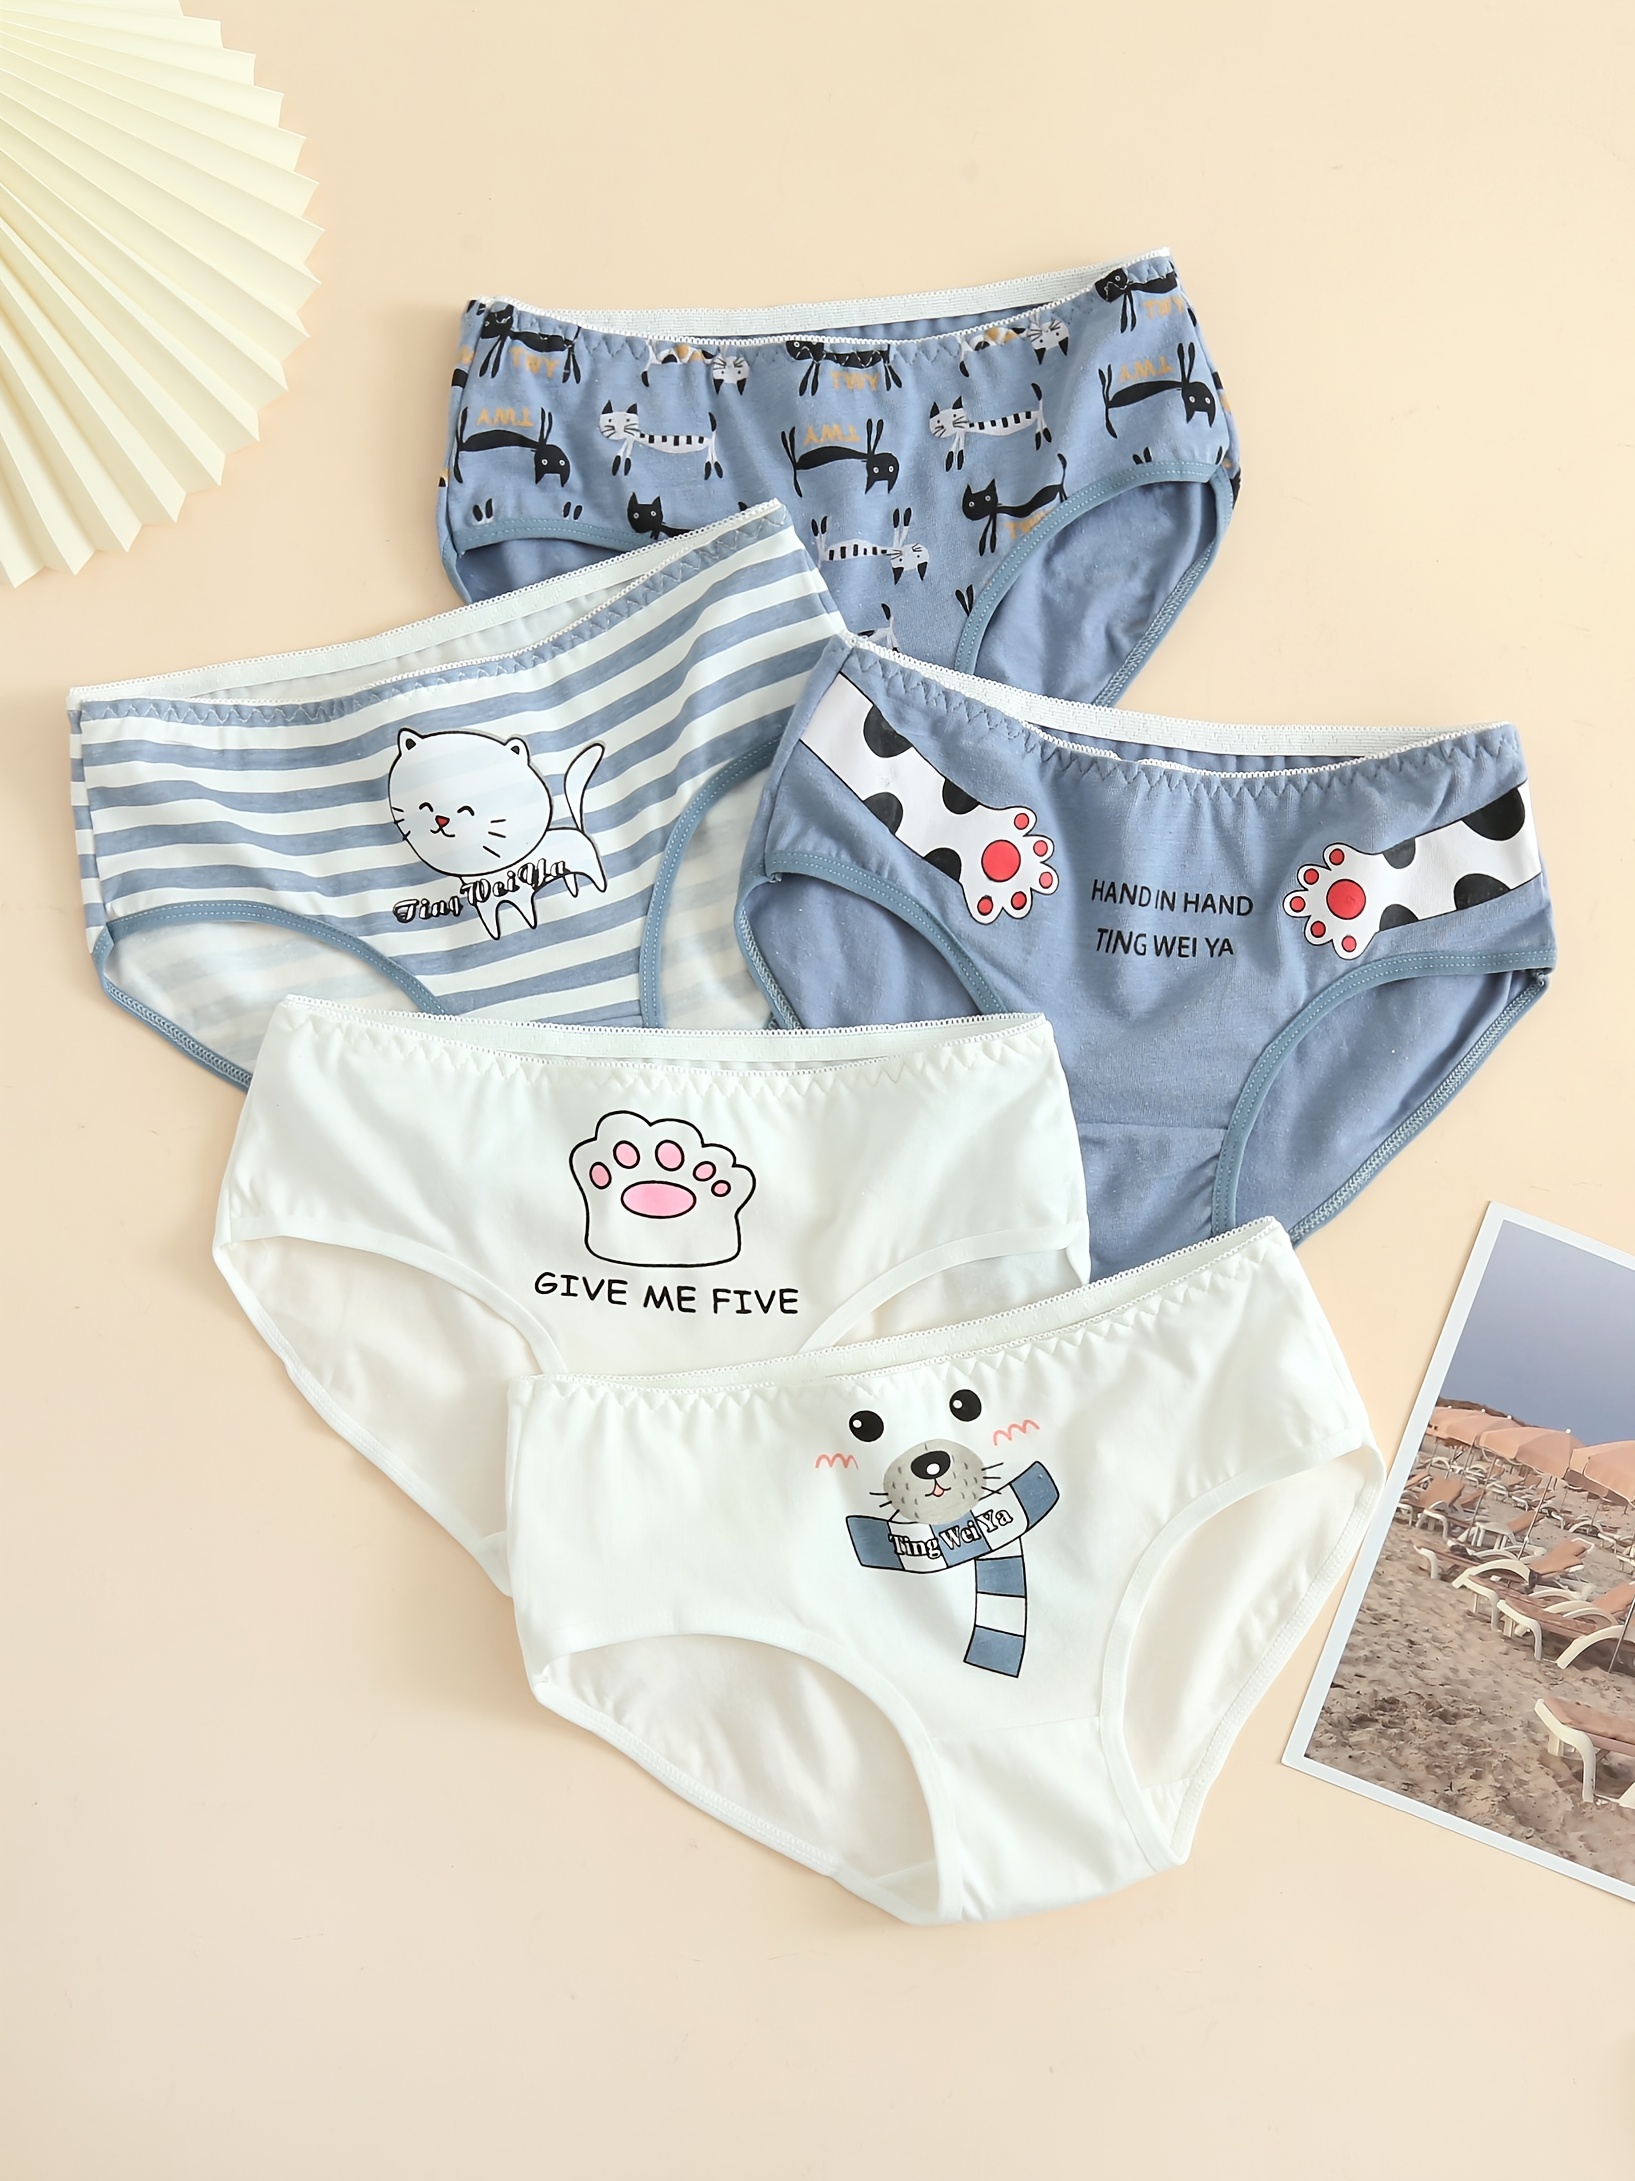 5pcs Cute Pattern Briefs, Comfy & Breathable Elastic Cotton Intimates  Panties, Women'a Lingerie & Underwear